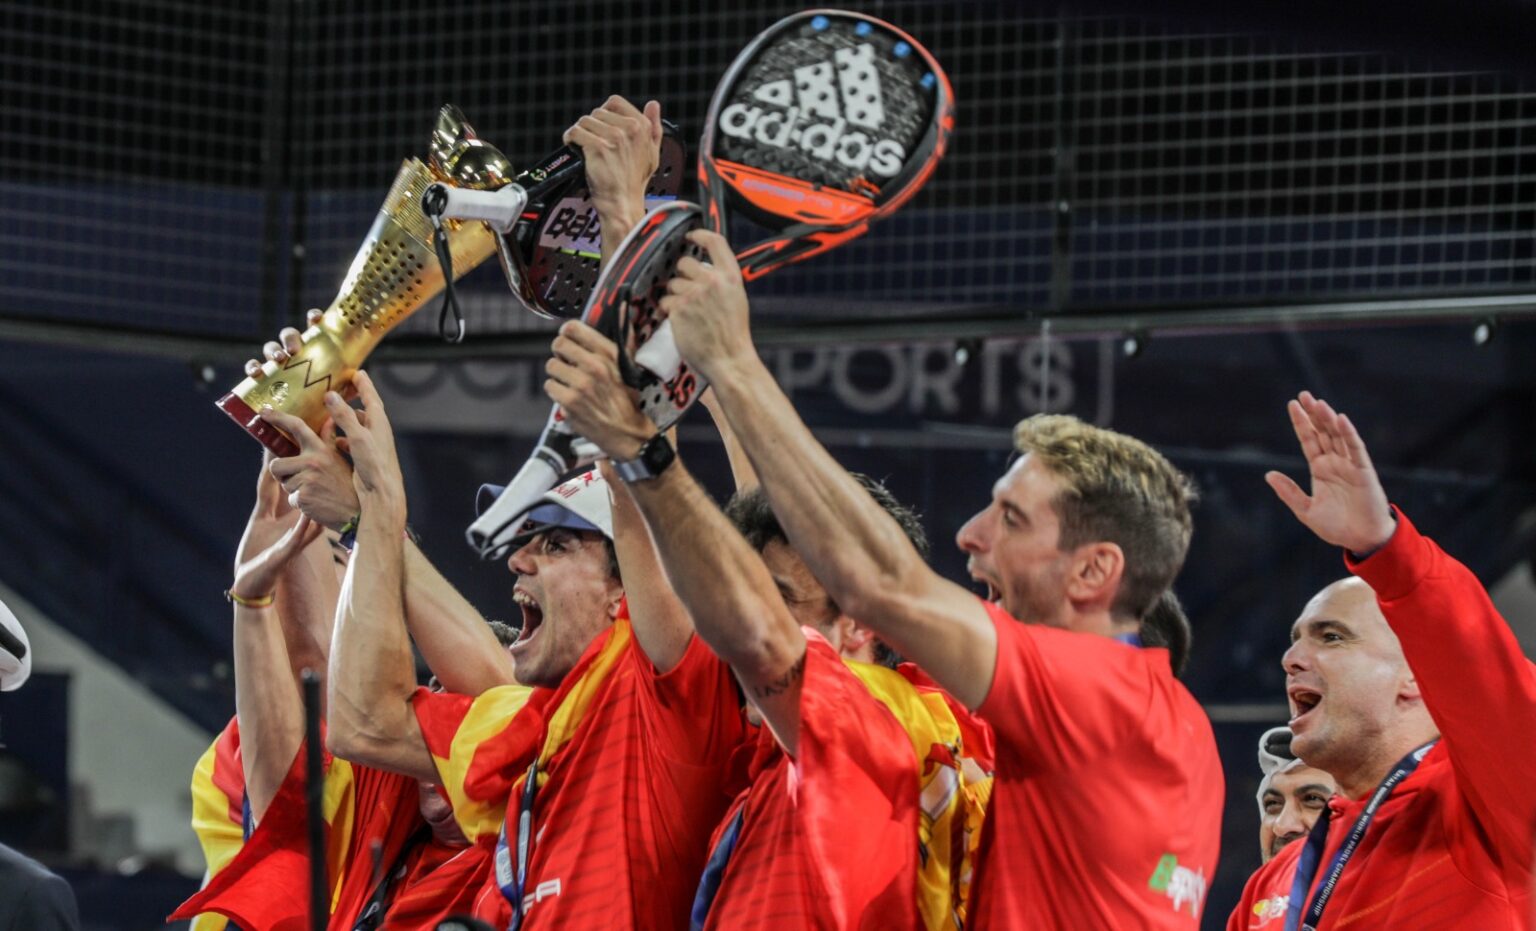 Espagnols joie victoire champions du monde padel qatar 2020